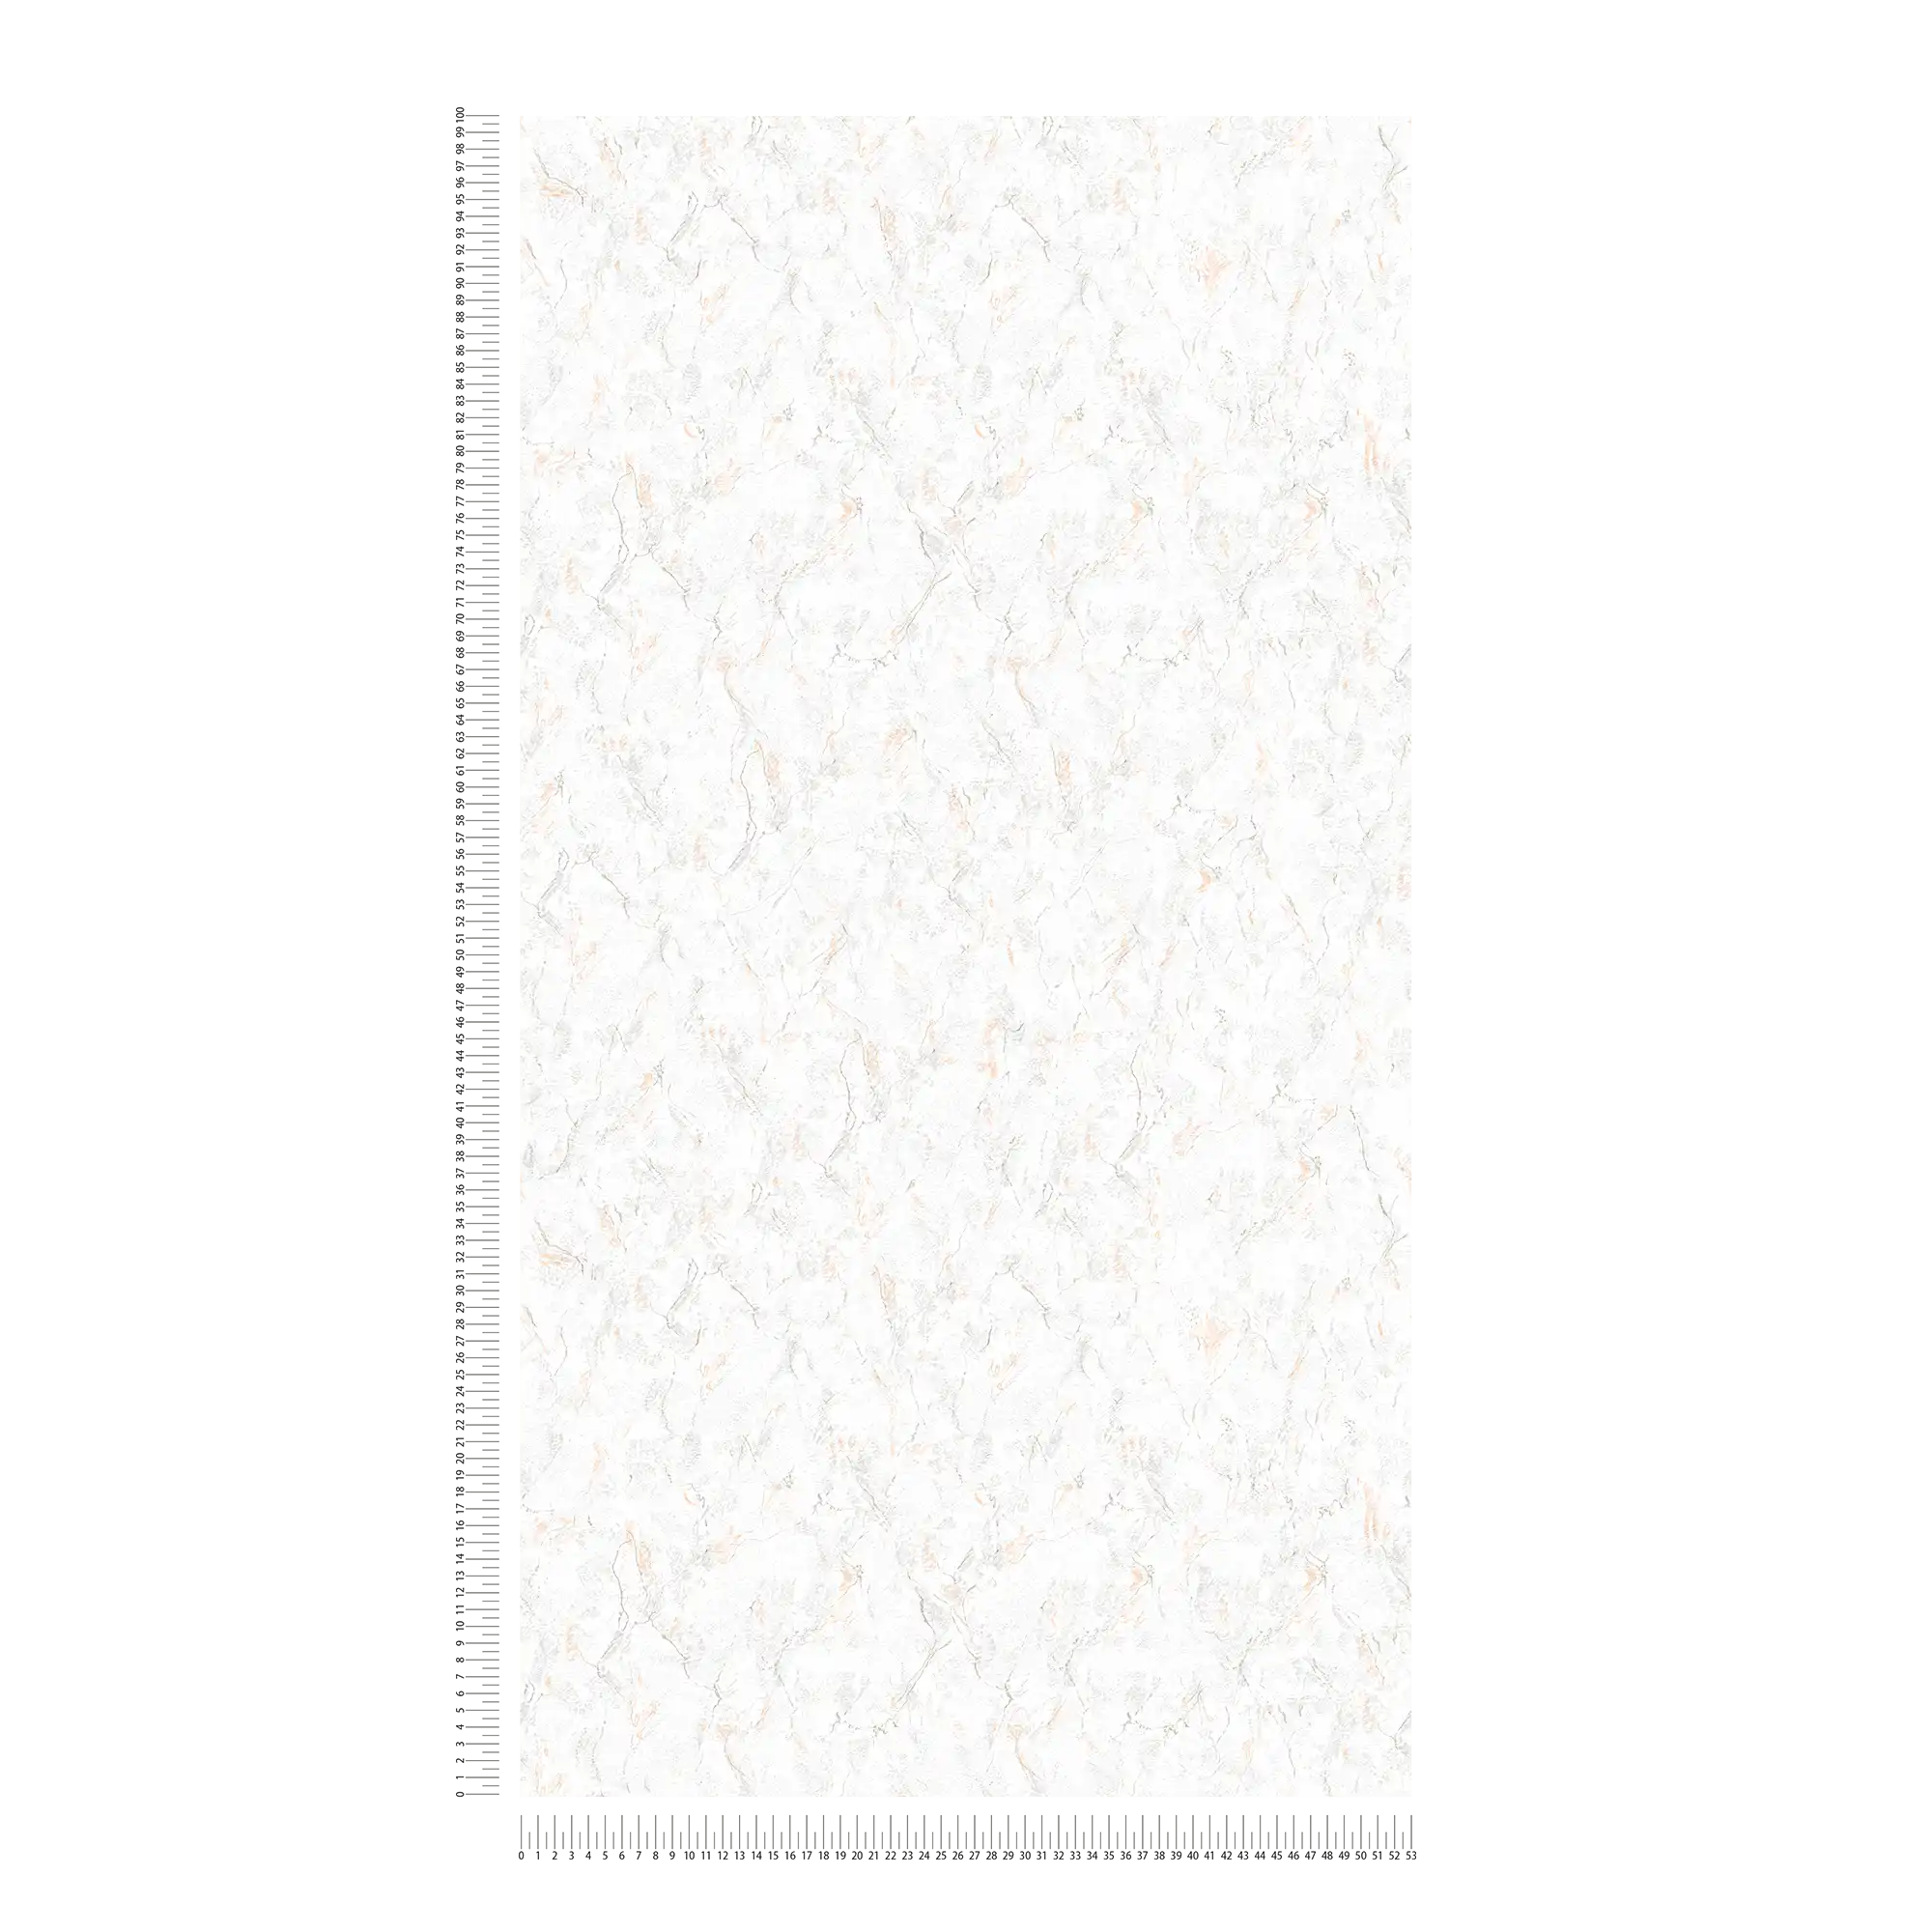             Papier peint marbré imitation pierre naturelle - gris, blanc
        